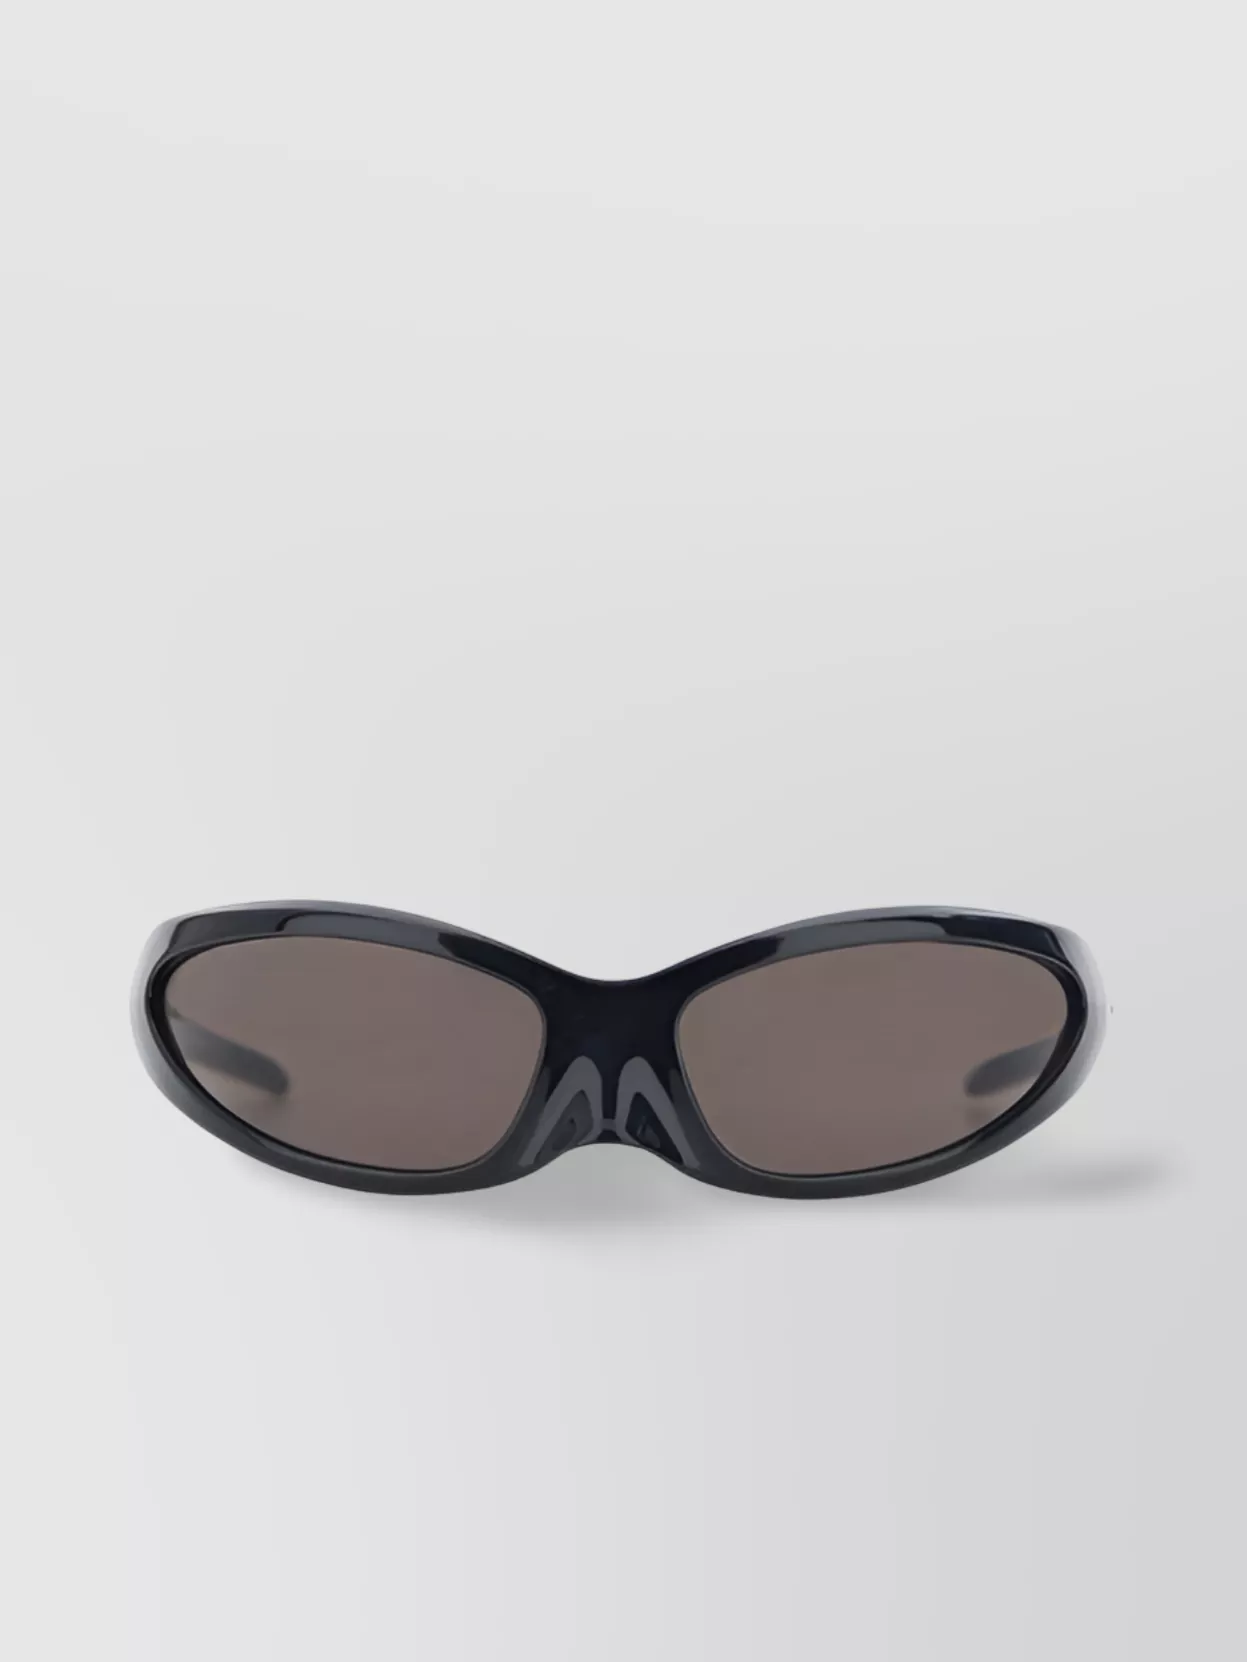 Balenciaga Curved Monochrome Oversized Sunglasses In Gray